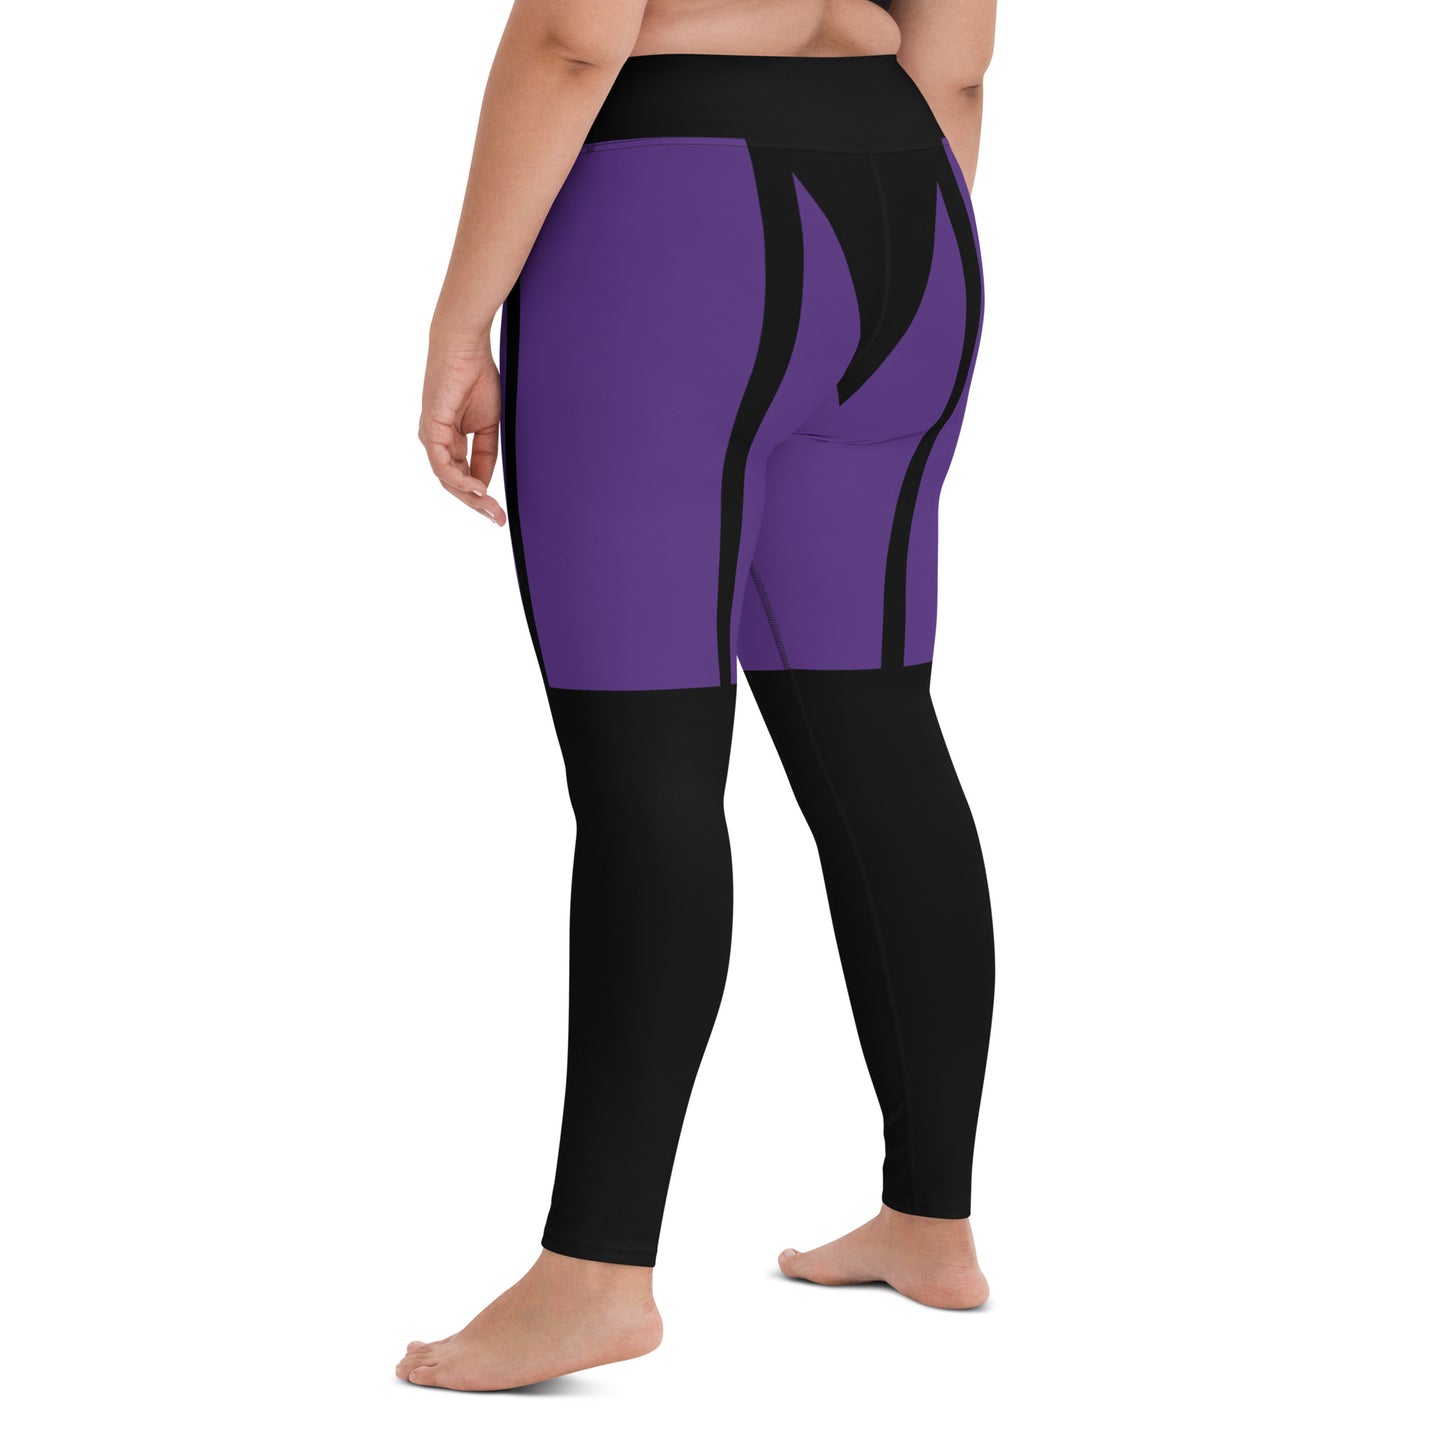 Garter leggings(purple&black)